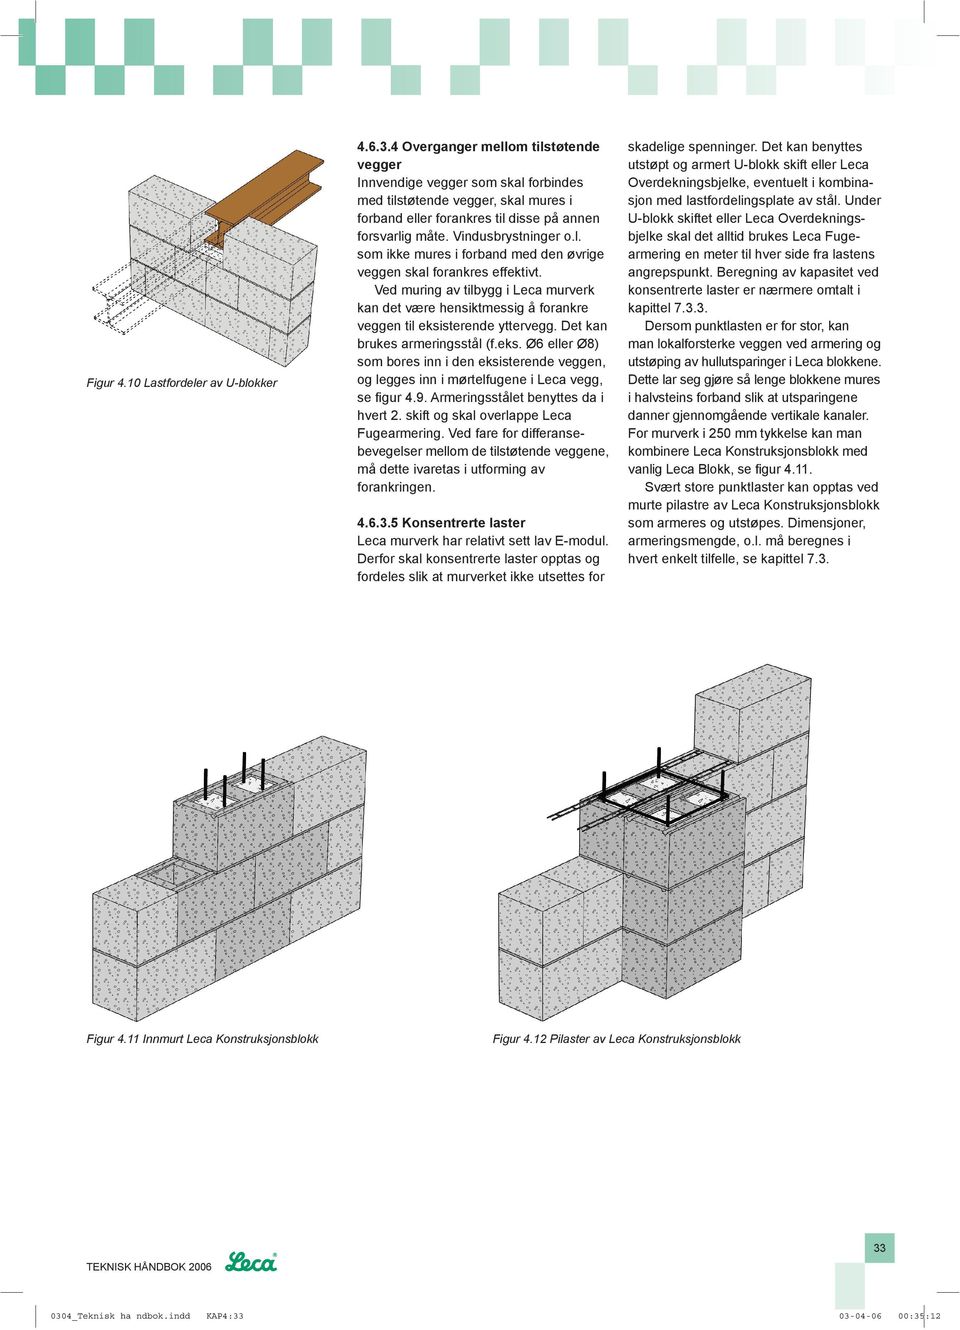 Ved muring av tilbygg i Leca murverk kan det være hensiktmessig å forankre veggen til eksisterende yttervegg. Det kan brukes armeringsstål (f.eks. Ø6 eller Ø8) som bores inn i den eksisterende veggen, og legges inn i mørtelfugene i Leca vegg, se fi gur 4.